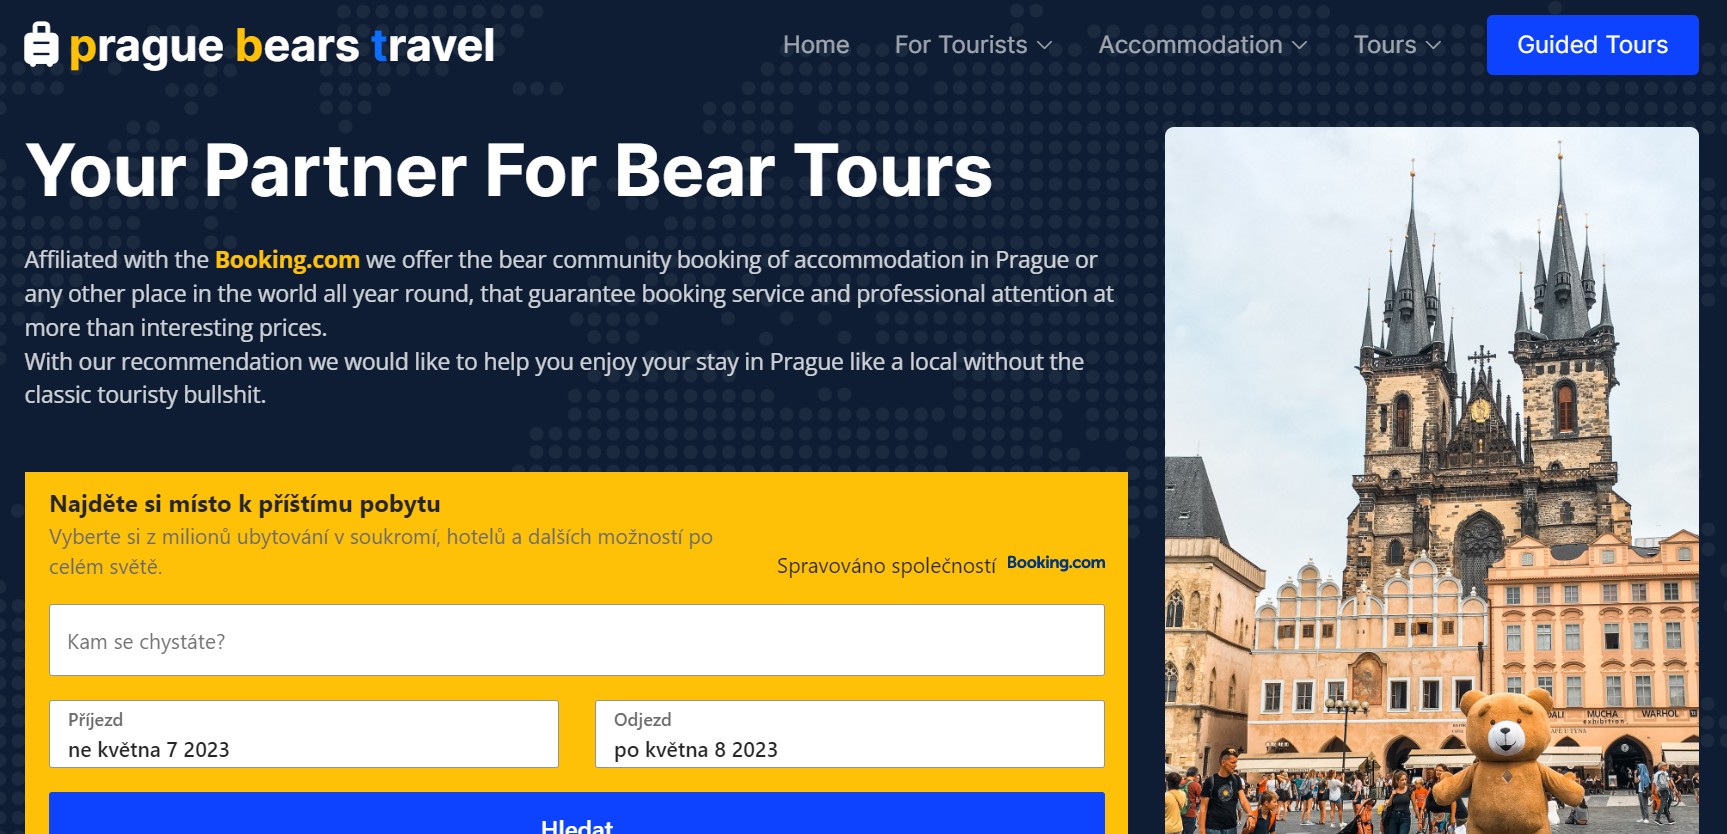 prague bears travel